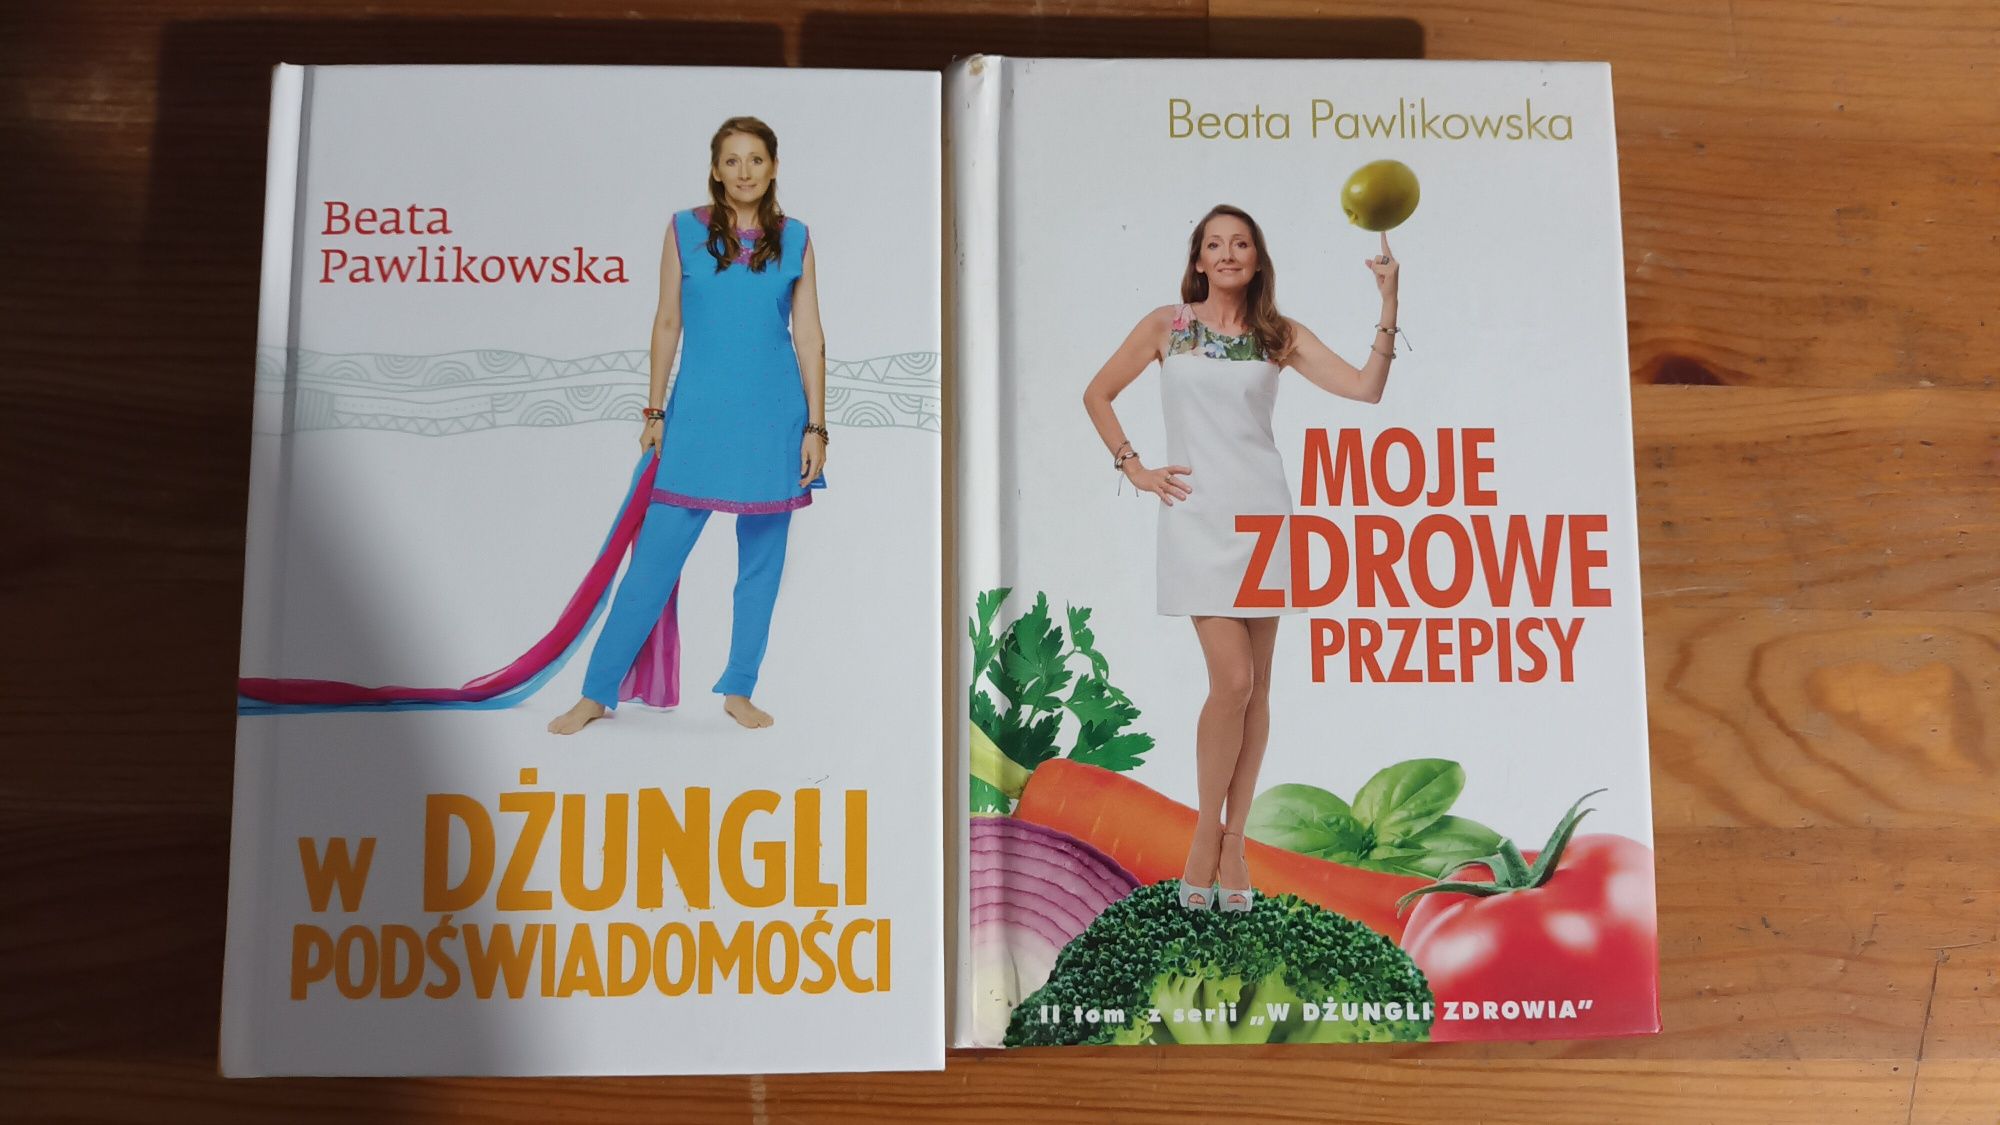 Moje zdrowe przepisy i W dżungli podświadomości i Beata Pawlikowska